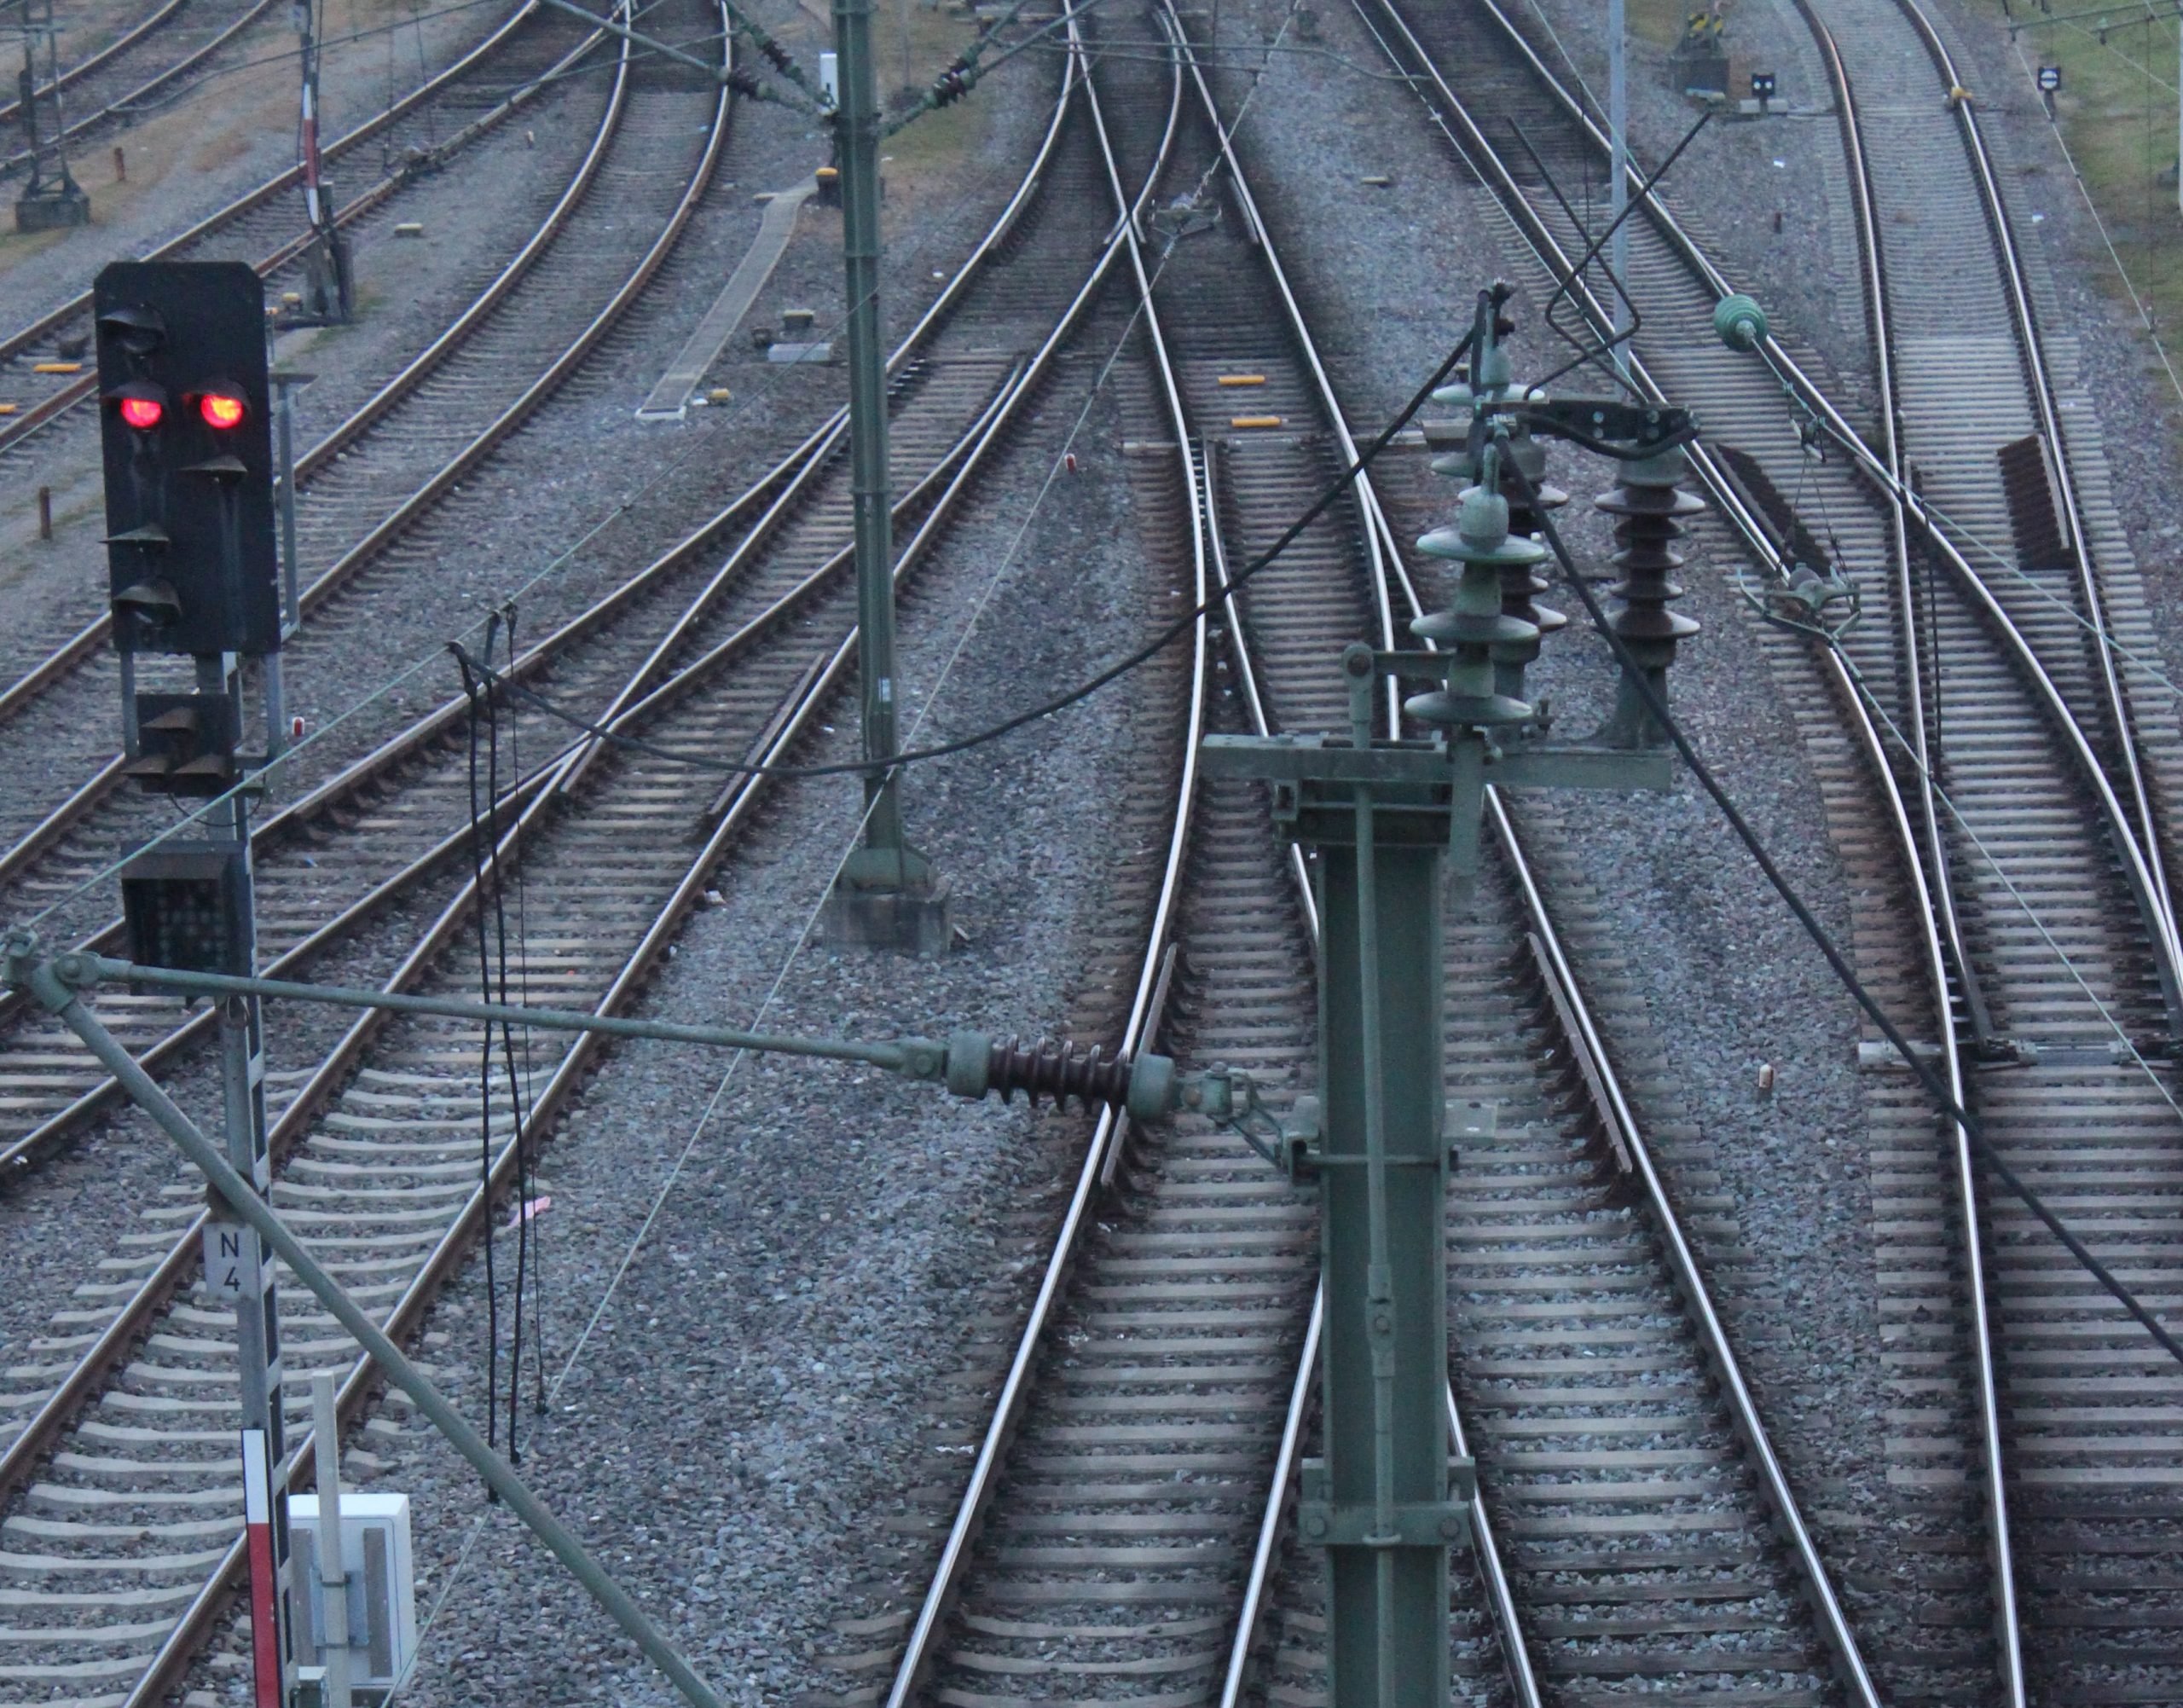 Lavori per Terzo Valico: sospesa circolazione ferroviaria tra Tortona e Alessandria